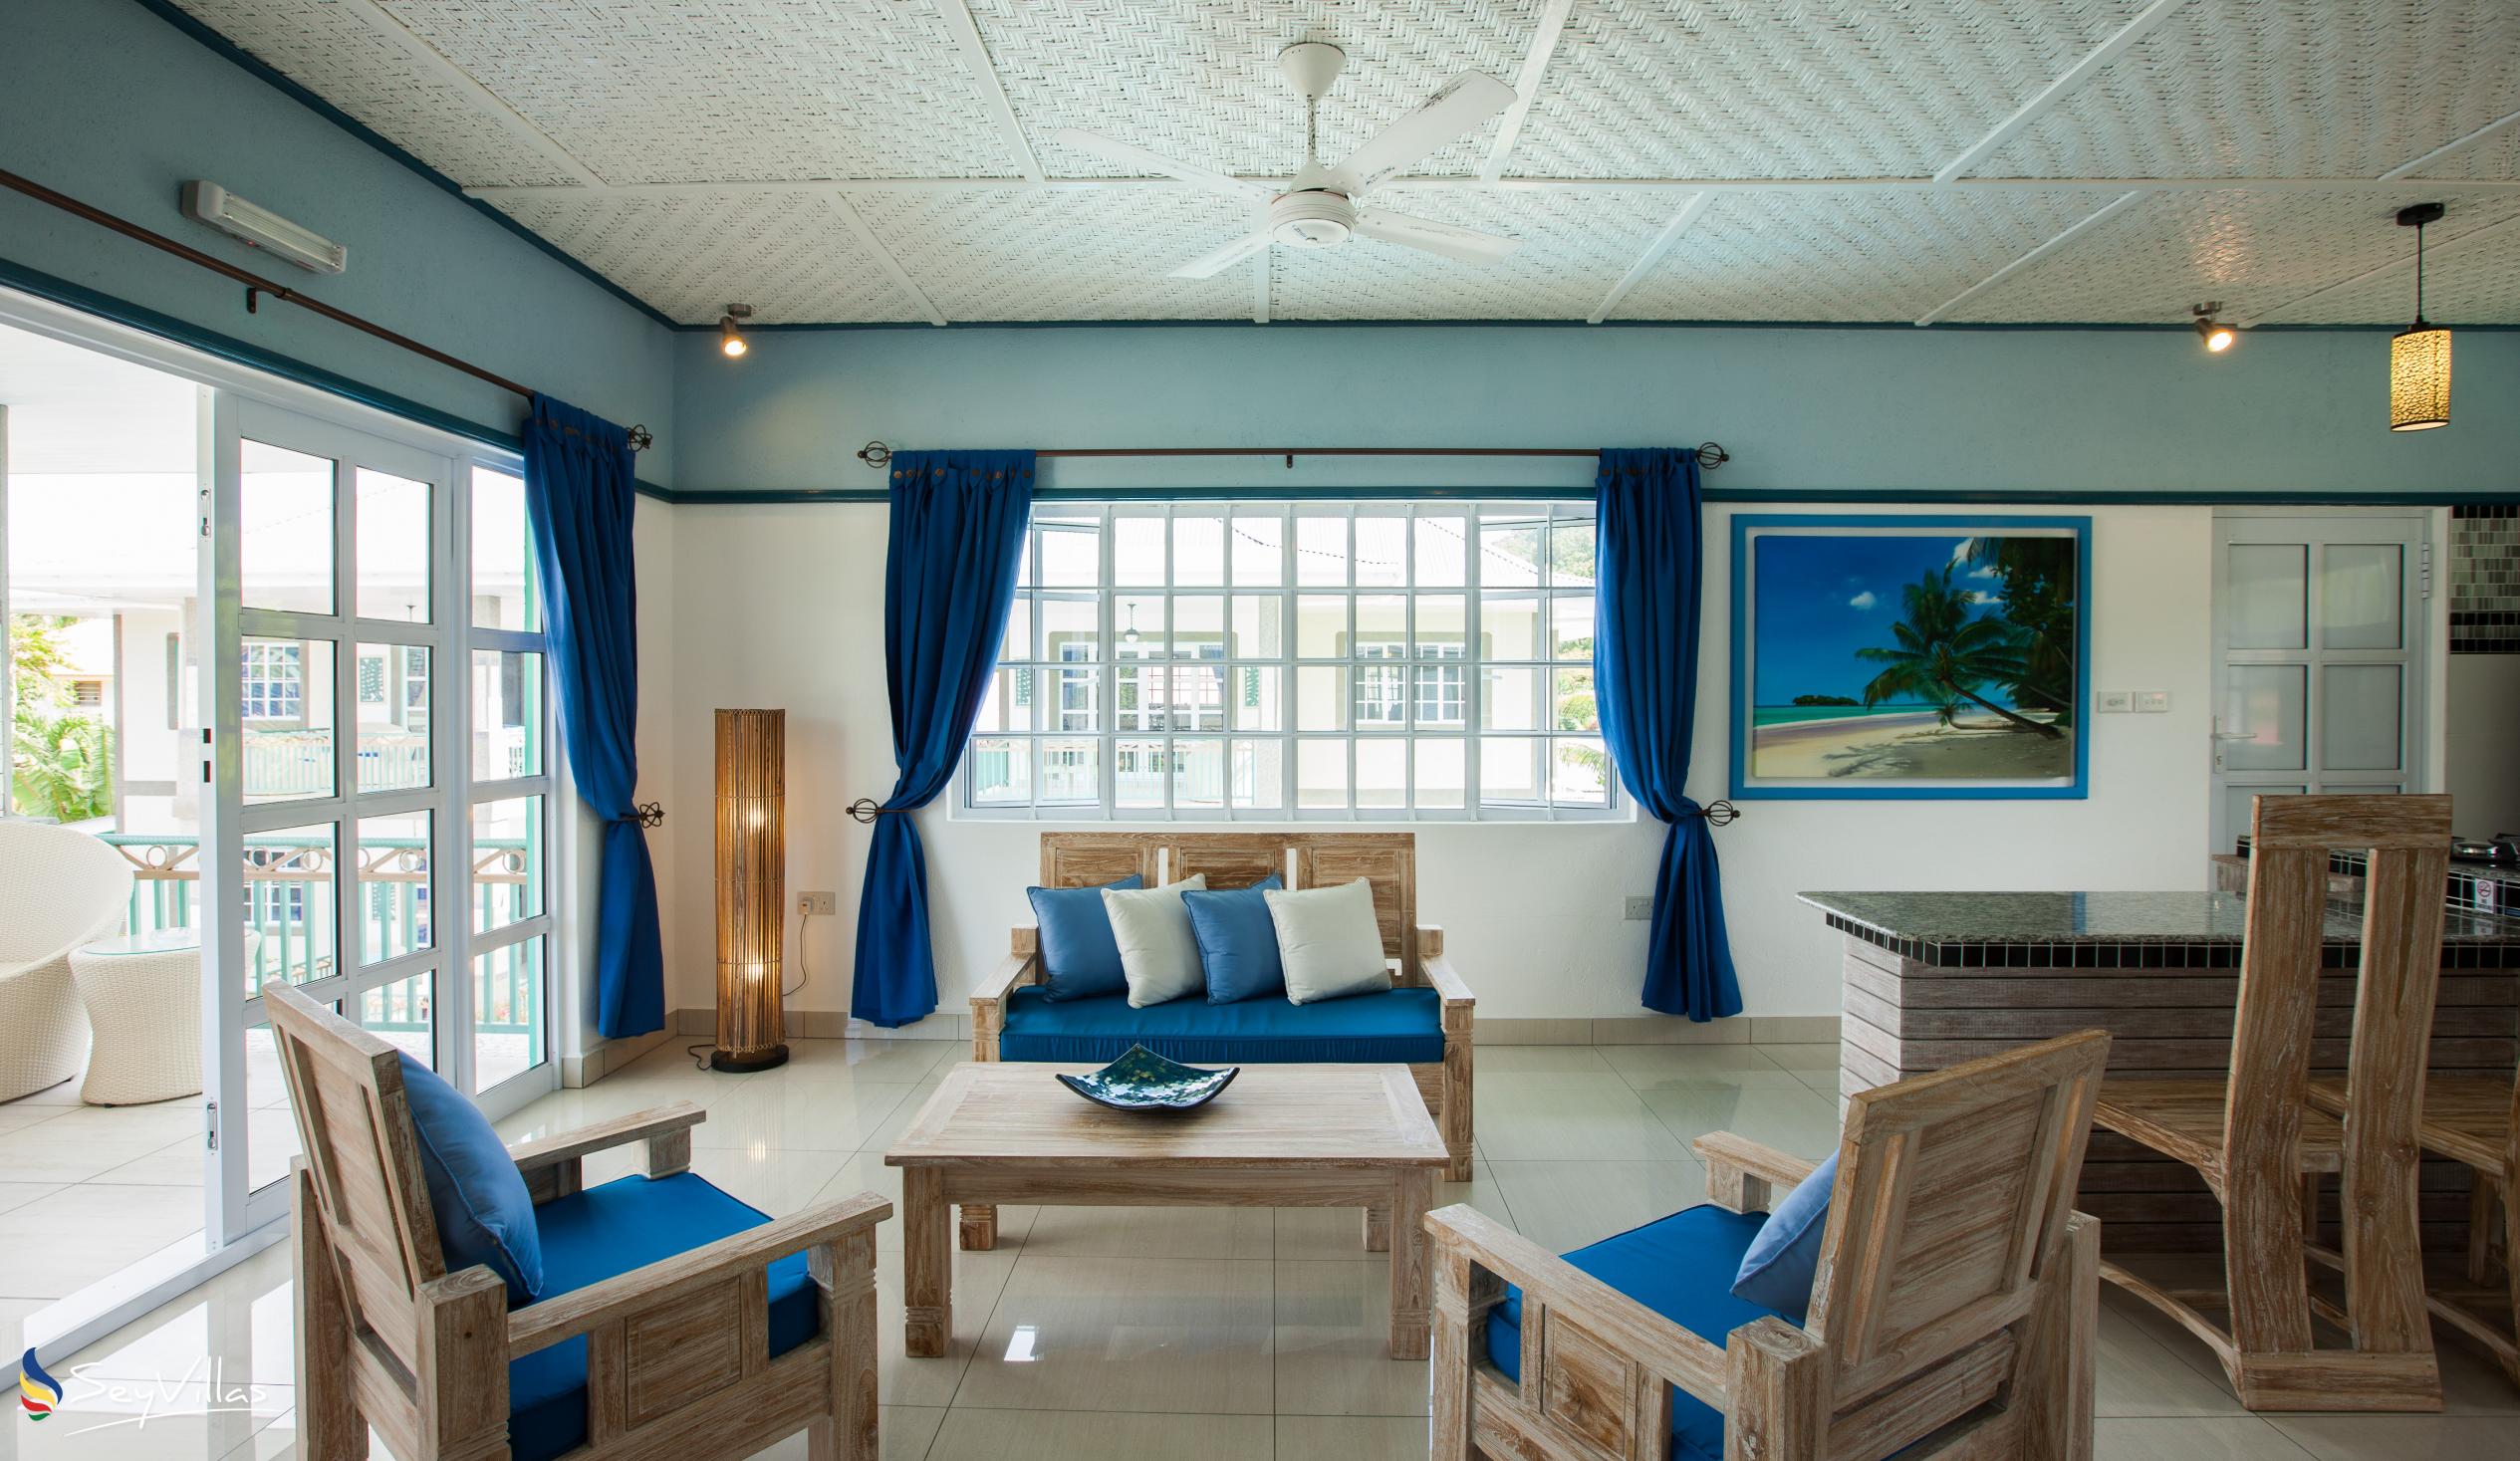 Foto 49: Villa Charme De L'ile - Appartamento Deluxe con vista piscina - La Digue (Seychelles)